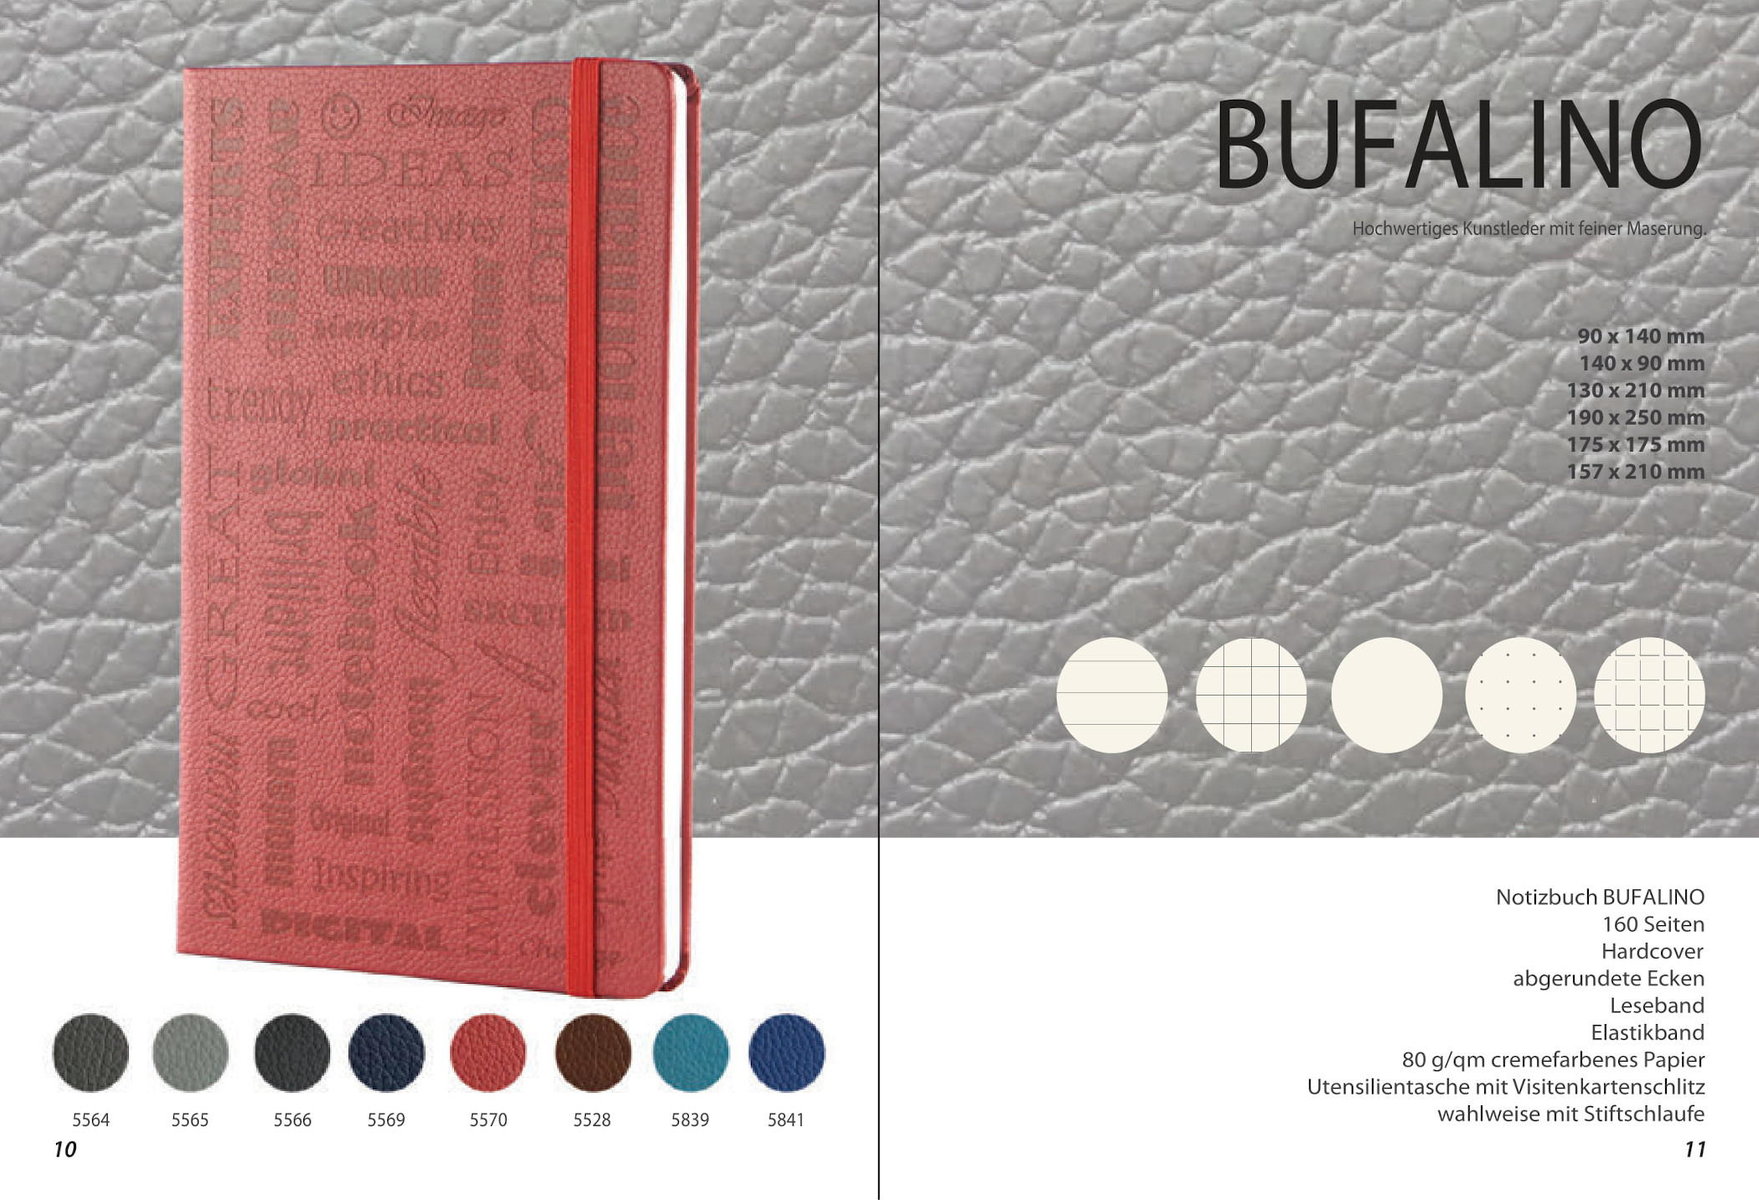 Notizbuch „Bufalino“ von MinT Products